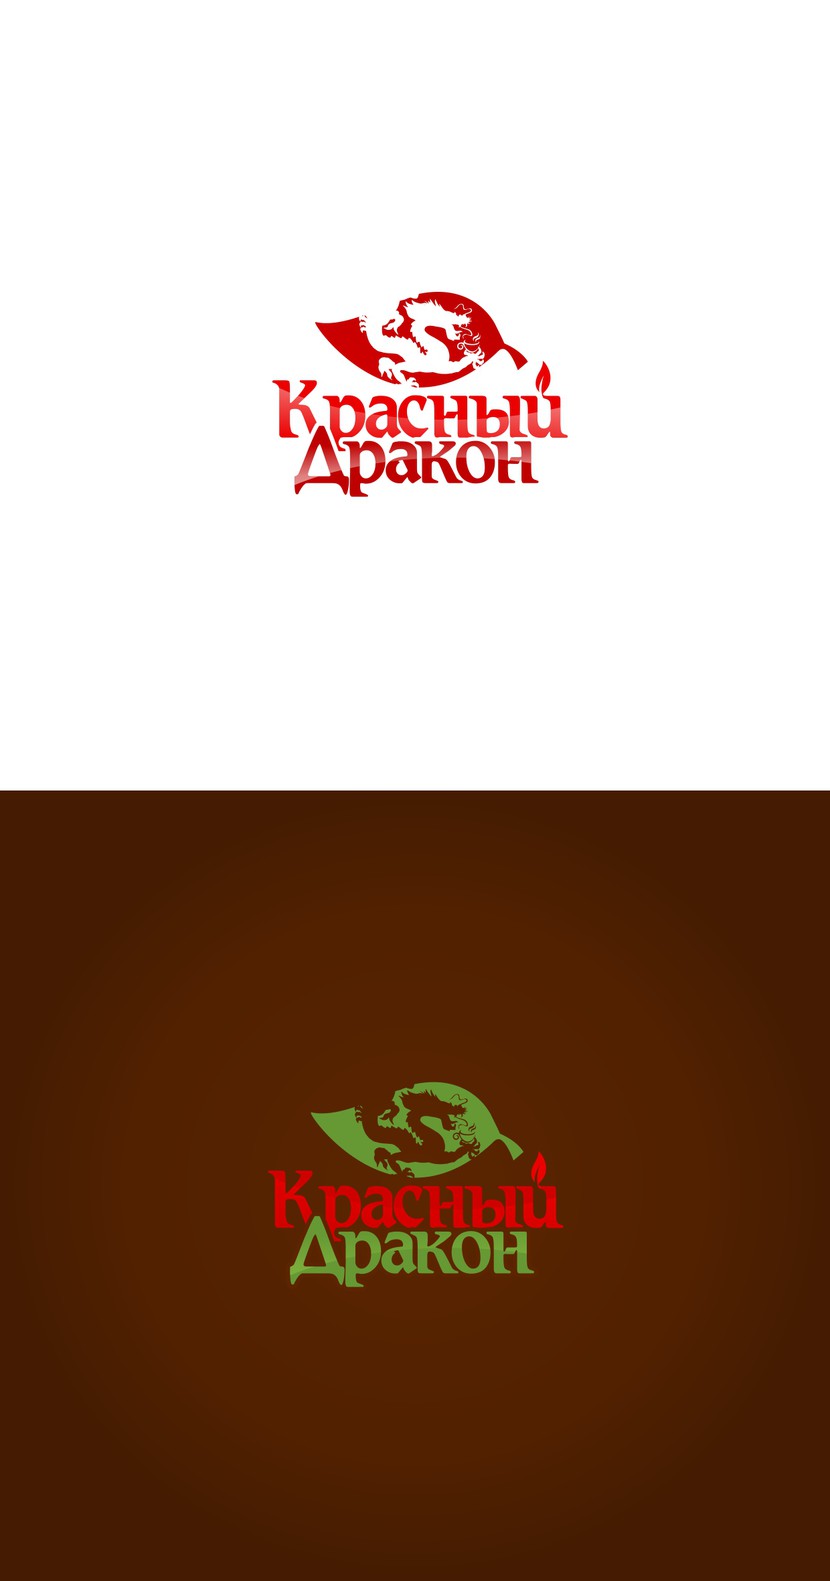 Красный Дракон logo 07 - Разработка логотипы для чайного магазина "Красный Дракон"